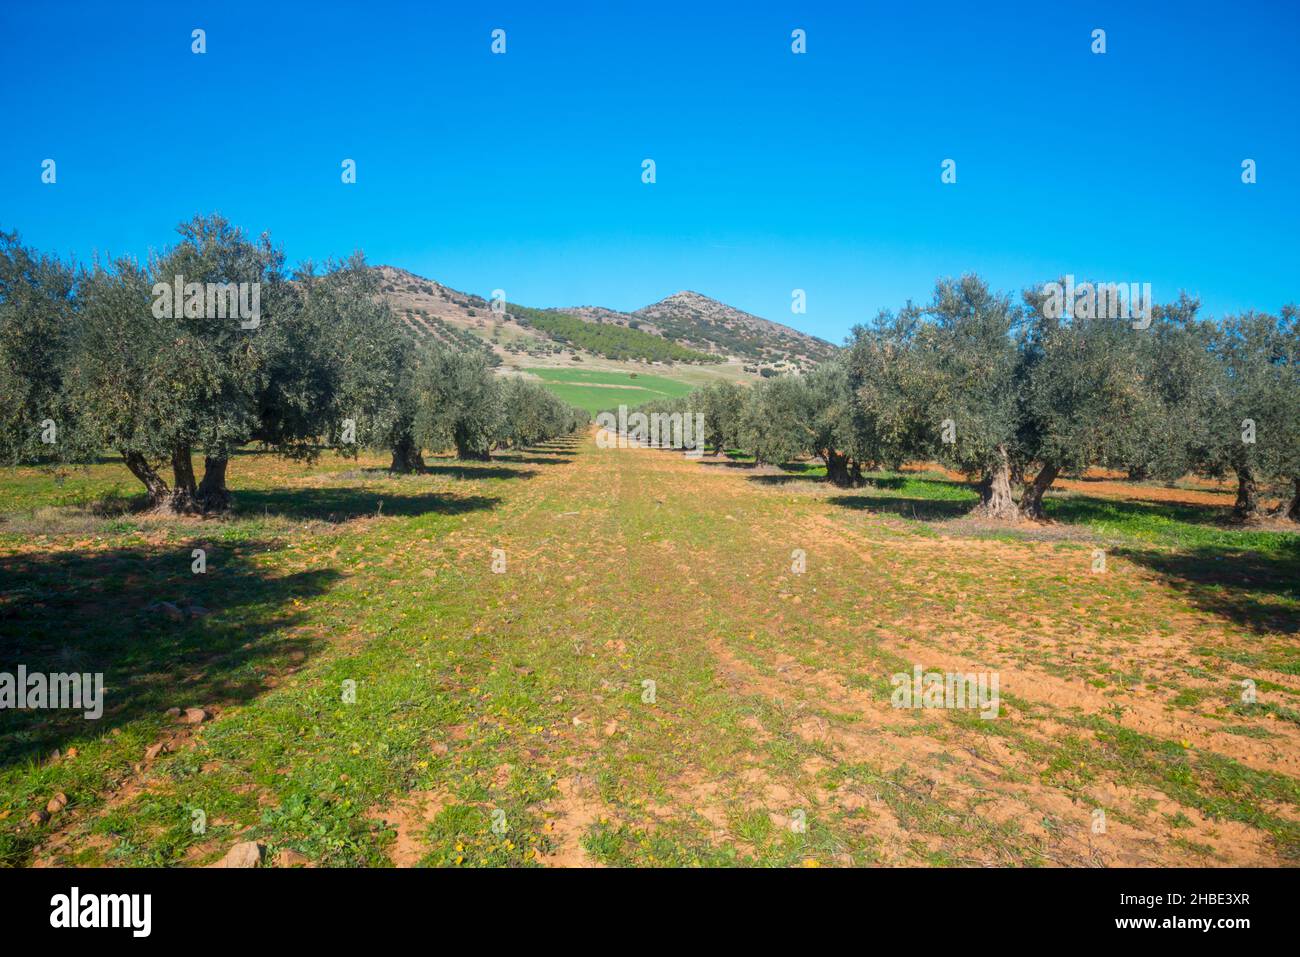 Olive grove. Fuente El Fresno, Ciudad Real province, Castilla La Mancha, Spain. Stock Photo